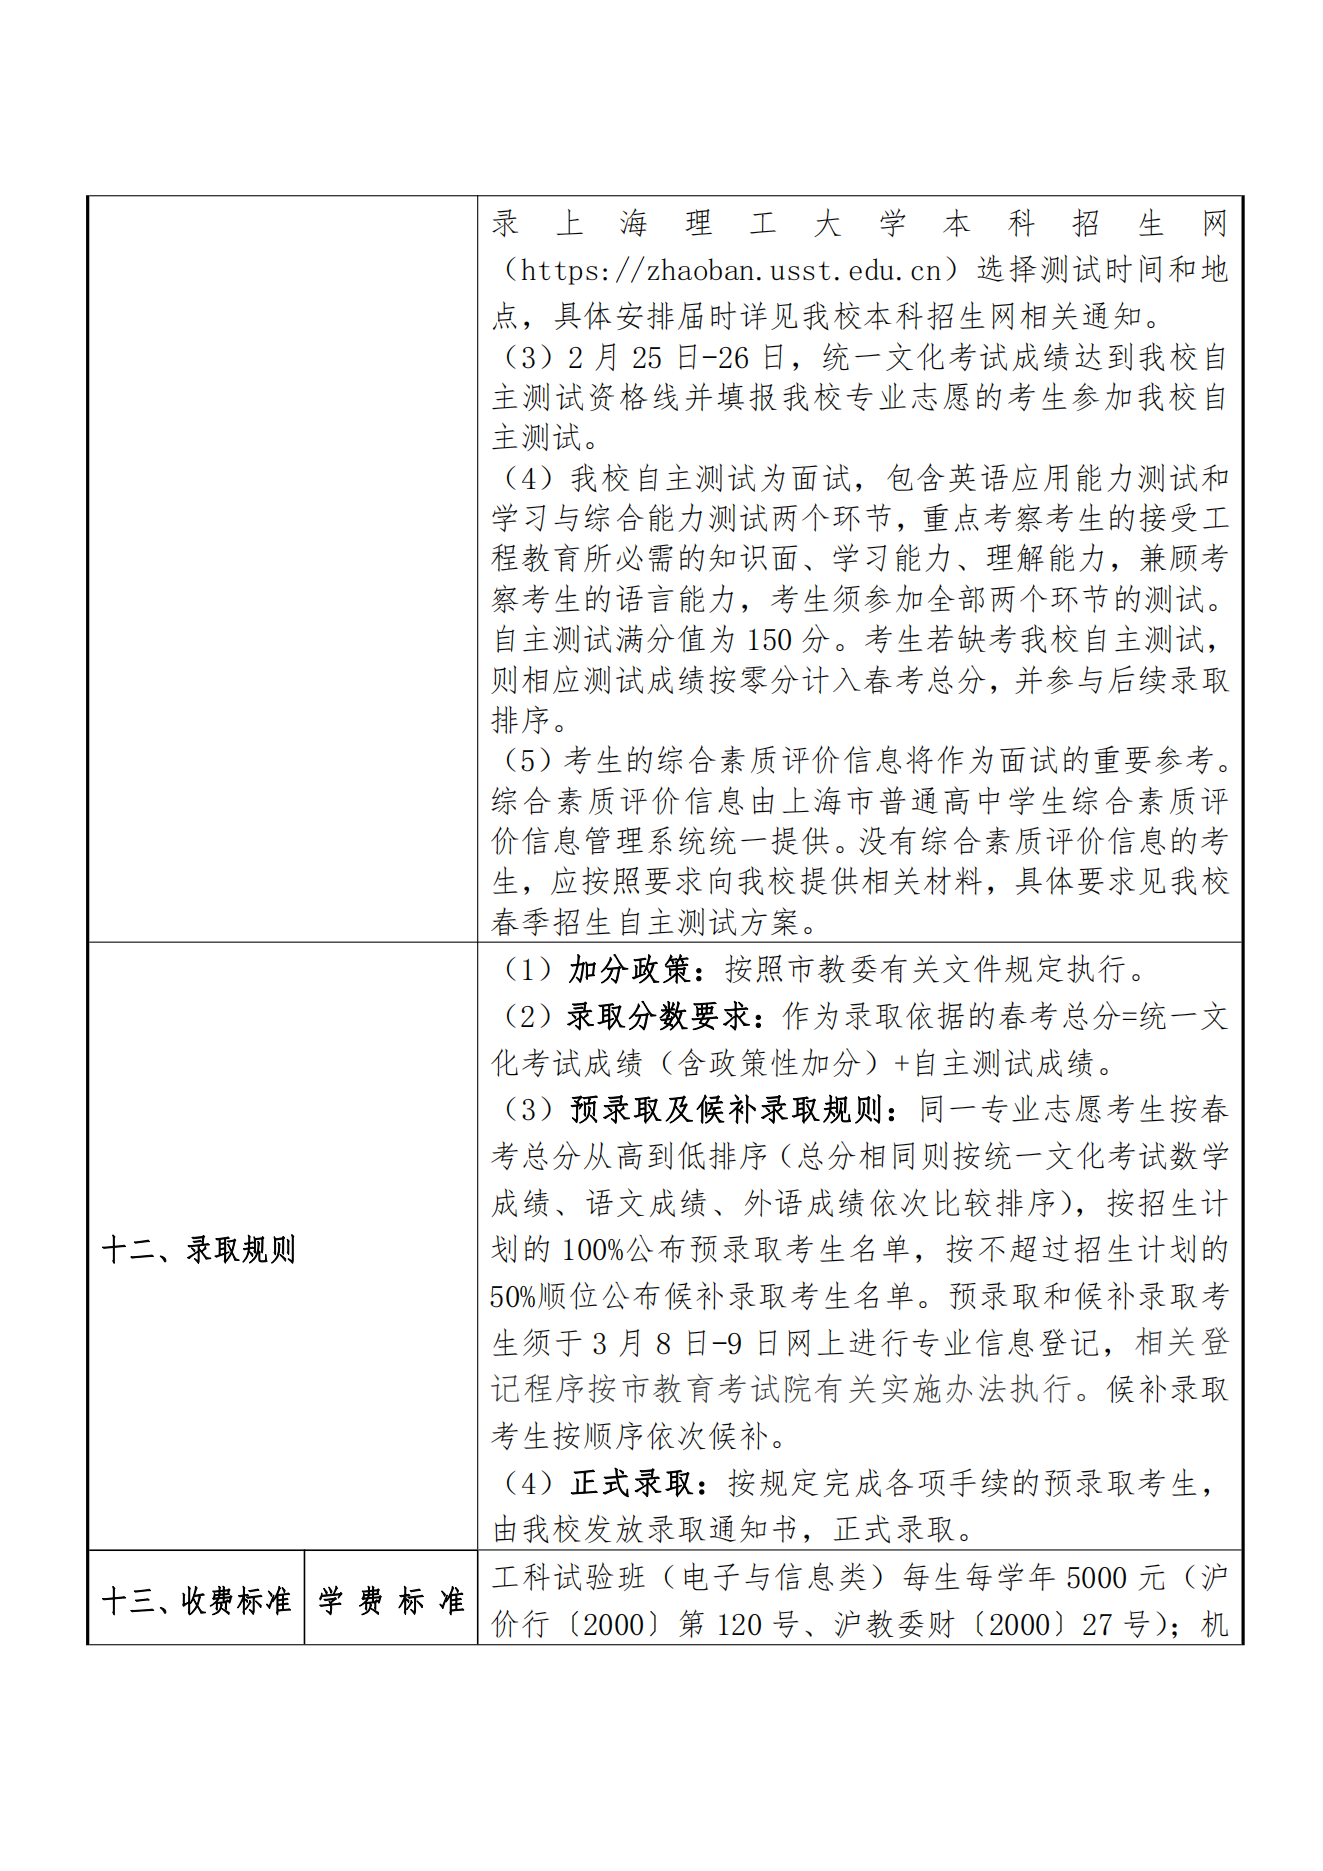 上海理工大学2023 年春季高考招生章程